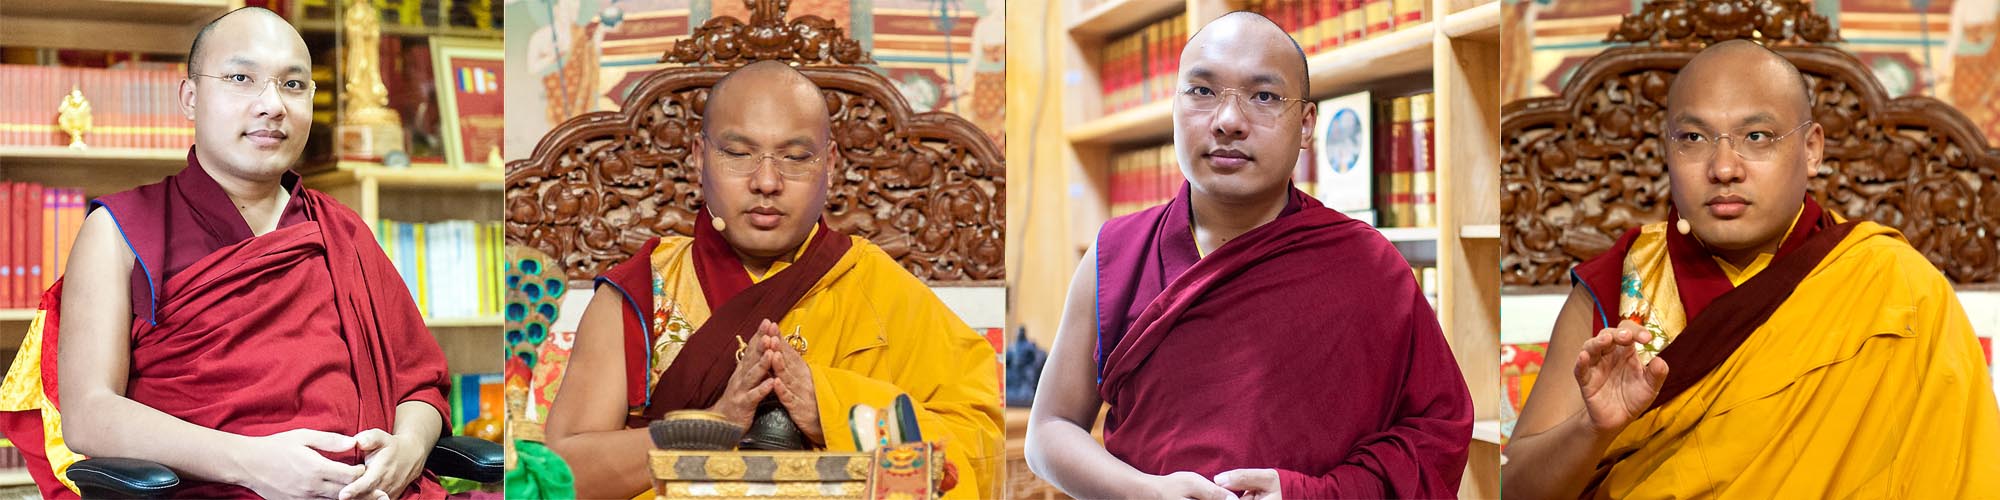 H.H. 17. Gyalwang Karmapa Ogyen Trinley Dorje